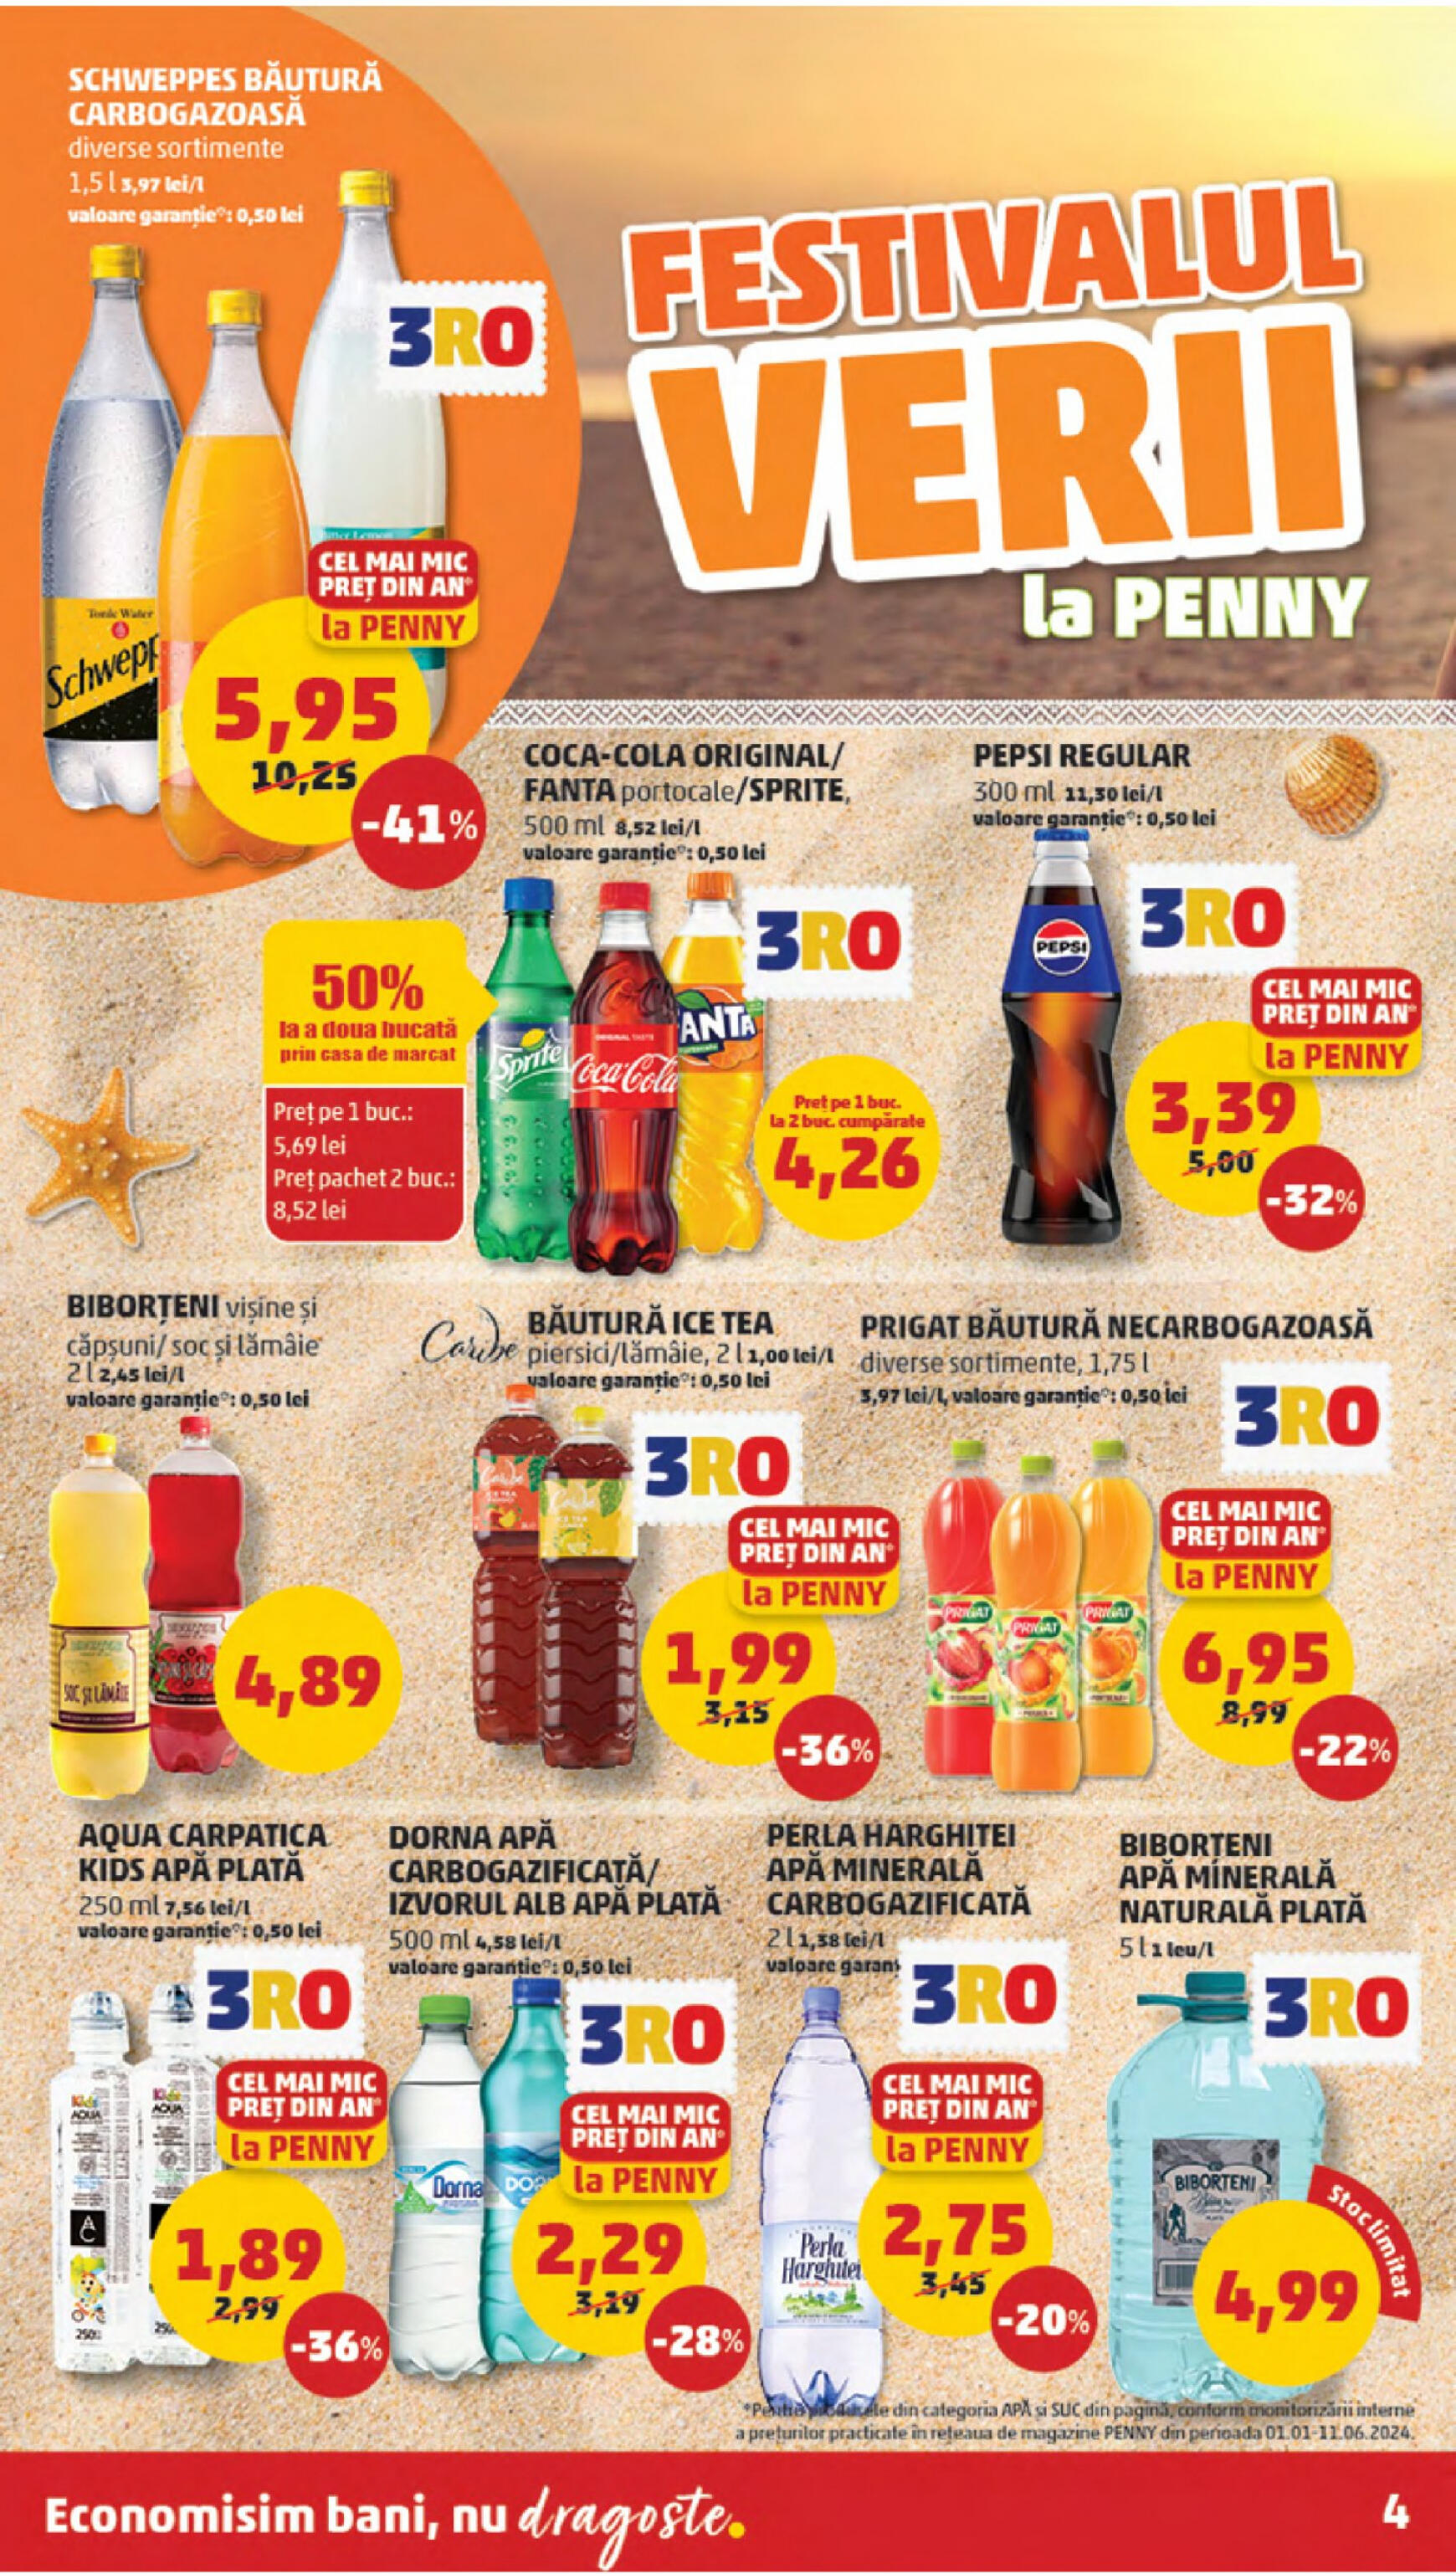 penny - Catalog nou PENNY 12.06. - 18.06. - page: 4